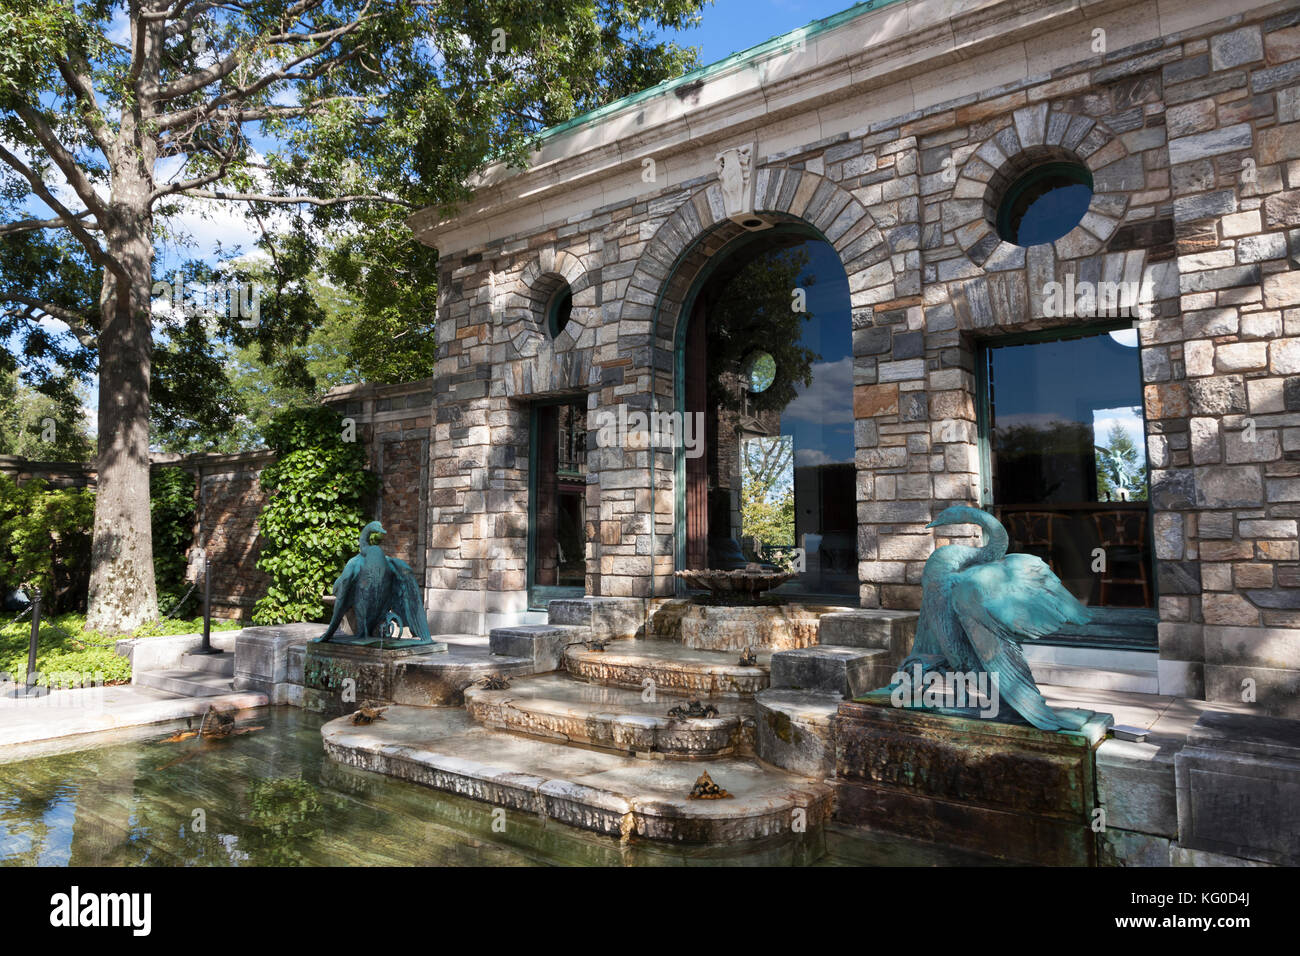 Maison de thé, avec des cygnes en bronze doré de style mauresque à fontaine en marbre, au Rockefeller Kykuit estate dans Sleepy Hollow, New York. Banque D'Images